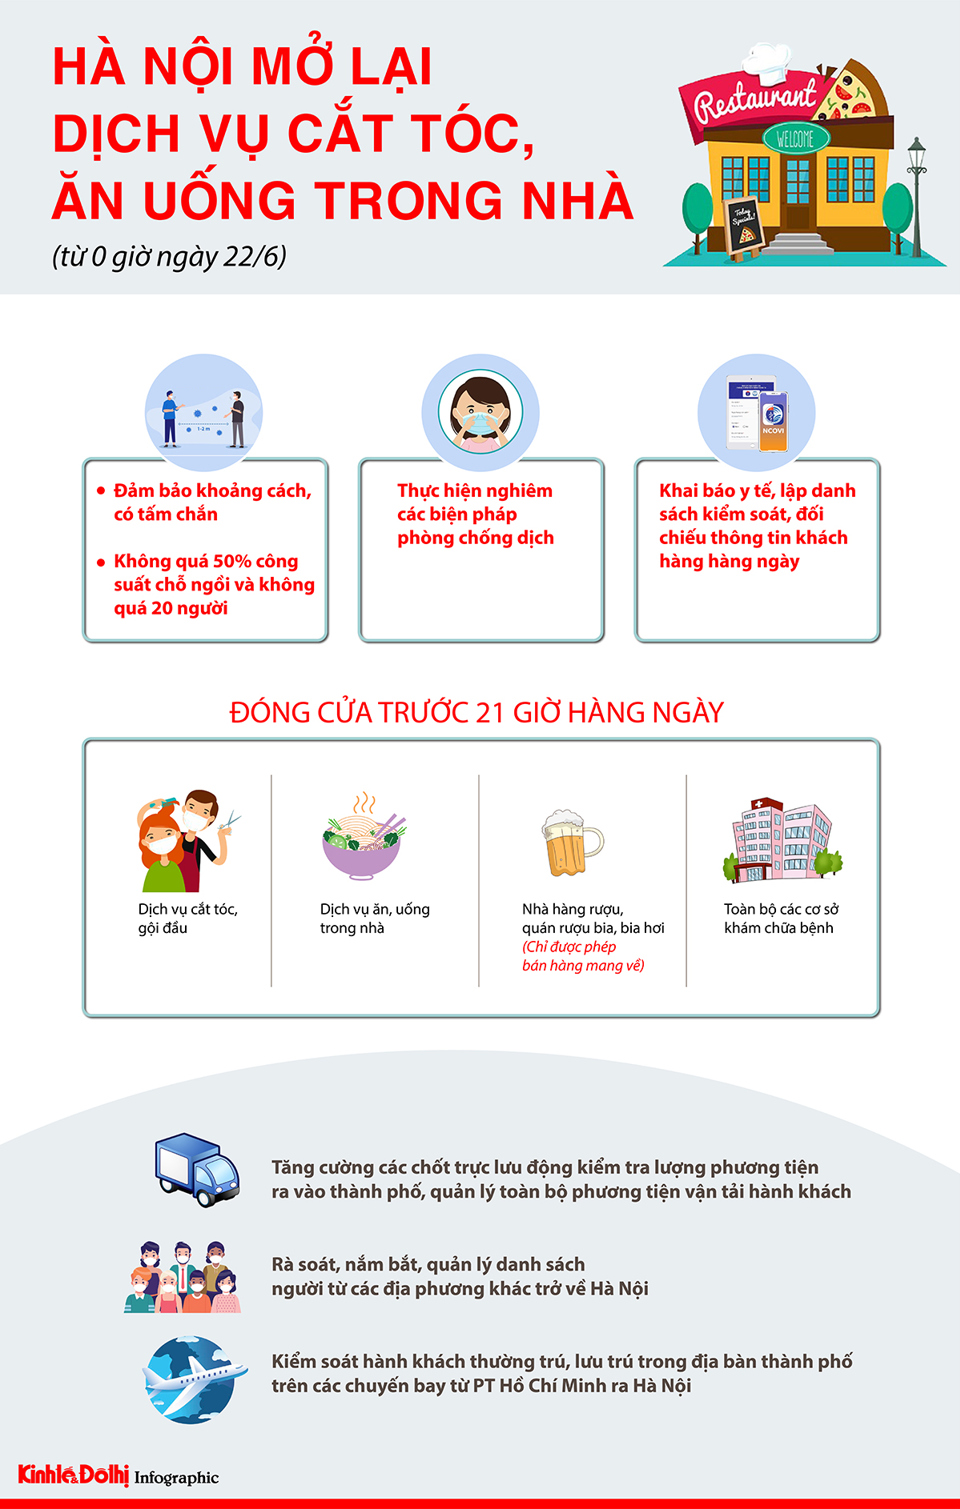 [Infographic] Chi tiết các loại hình dịch vụ được mở cửa từ ngày 22/6 tại Hà Nội - Ảnh 1